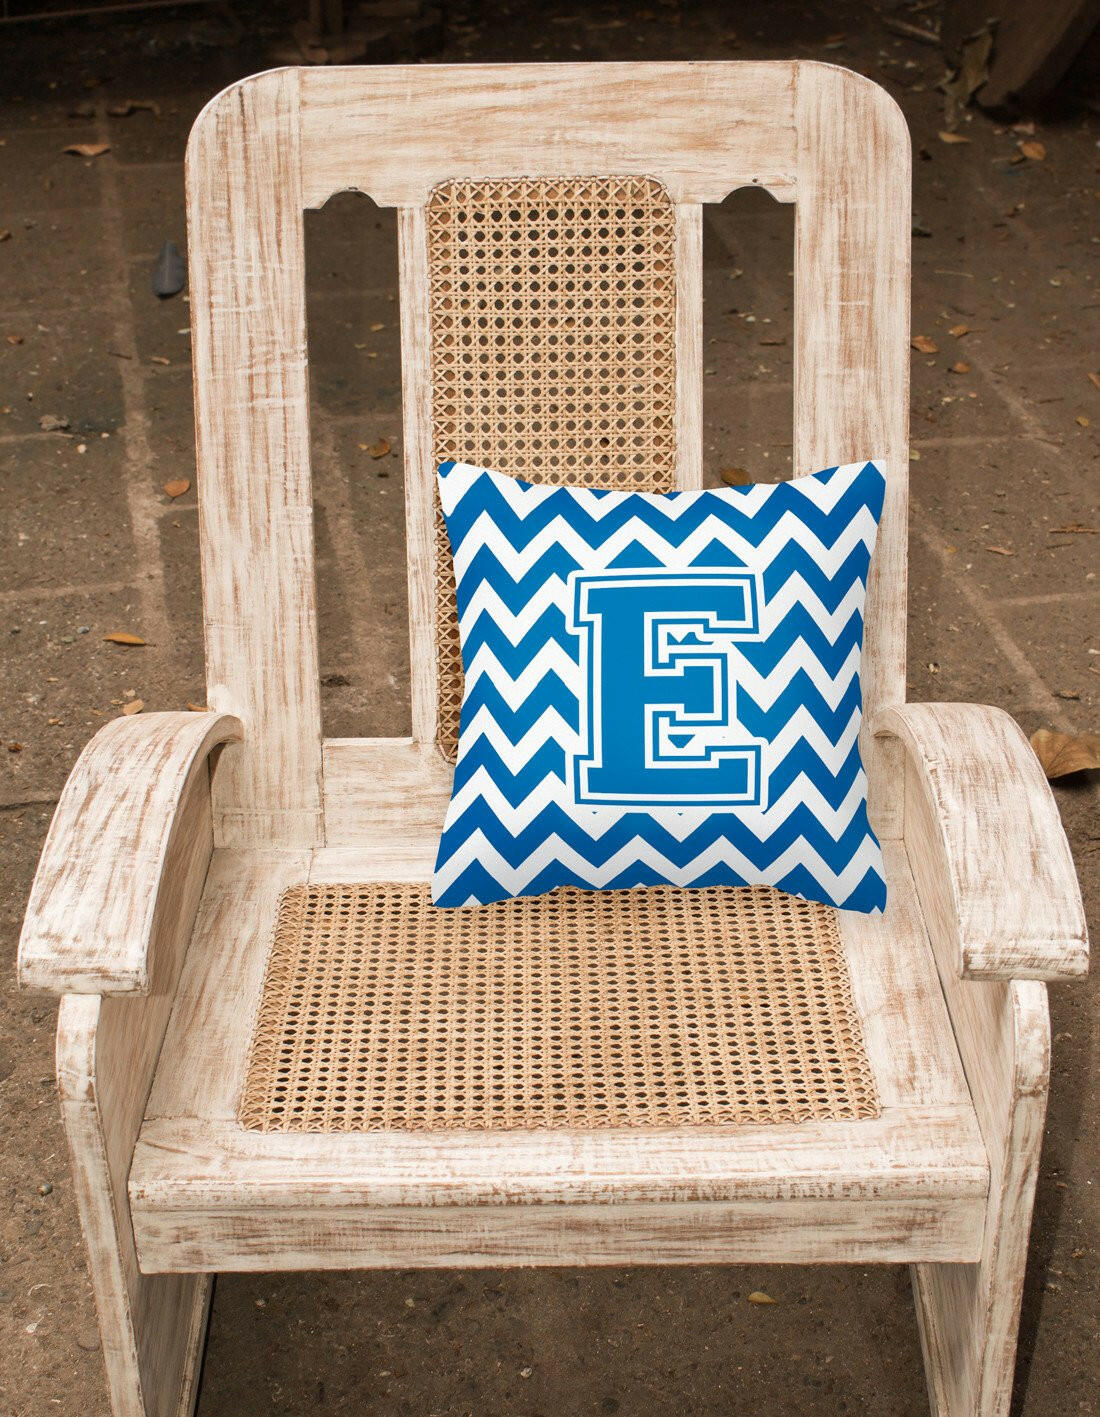 Letter E Chevron Blue and White Fabric Decorative Pillow CJ1056-EPW1414 by Caroline's Treasures